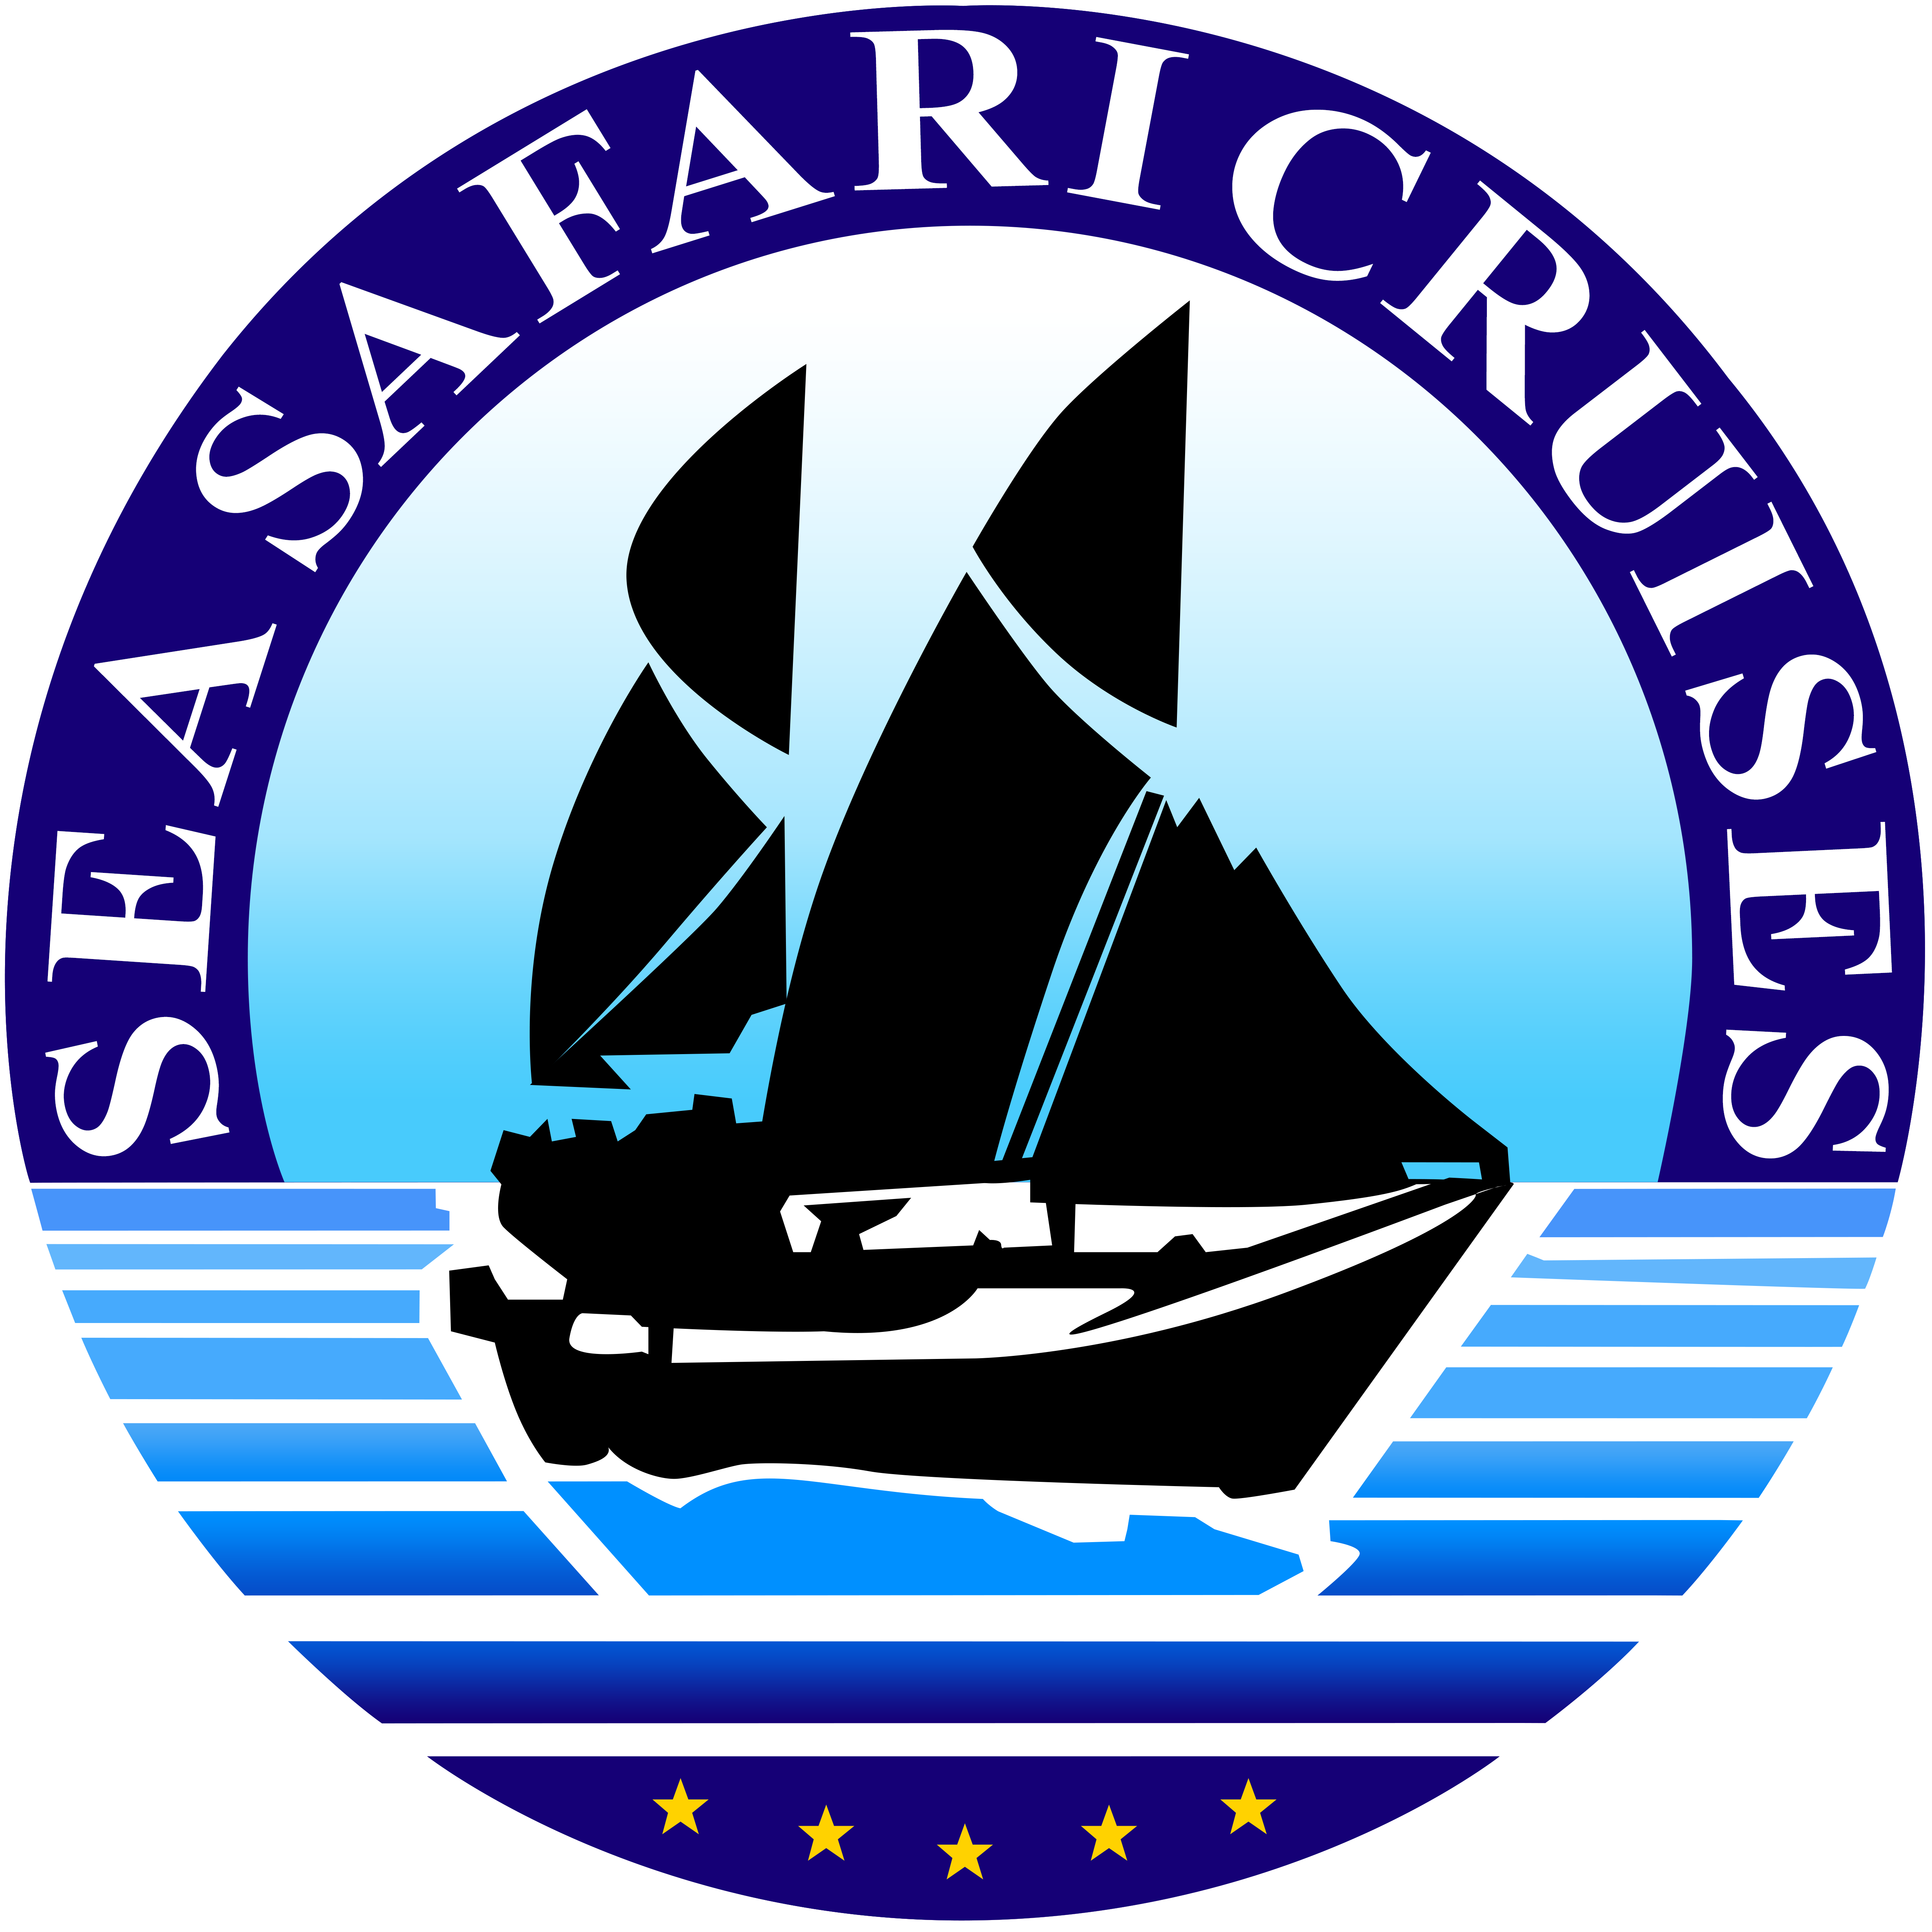 (c) Seasafaricruises.com